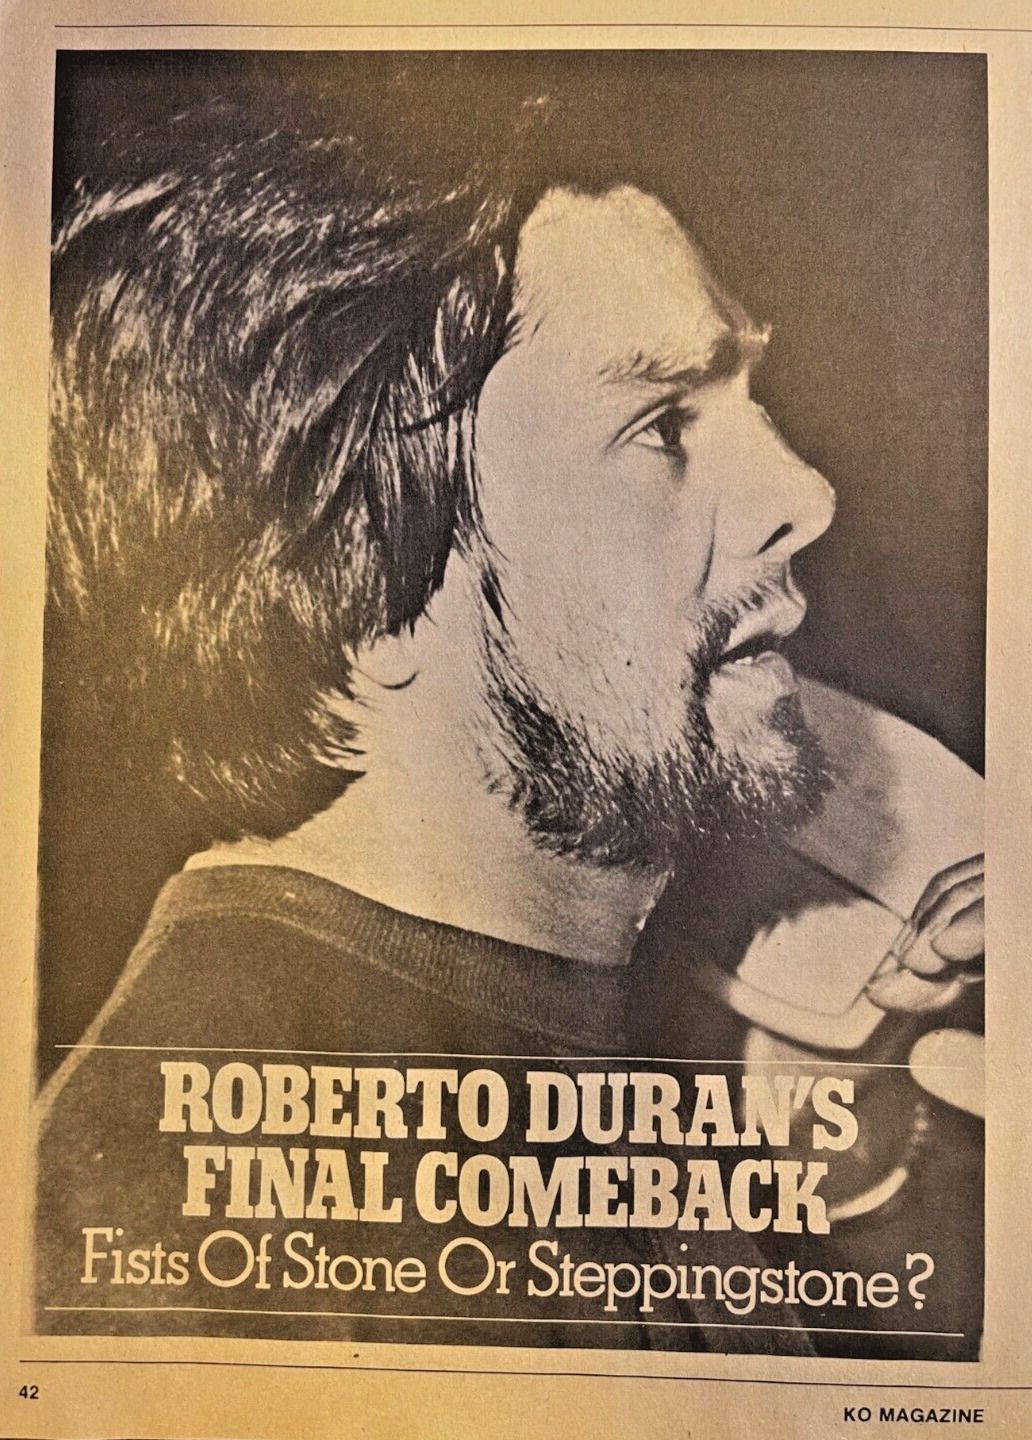 1982 Boxer Roberto Duran His Final Comeback